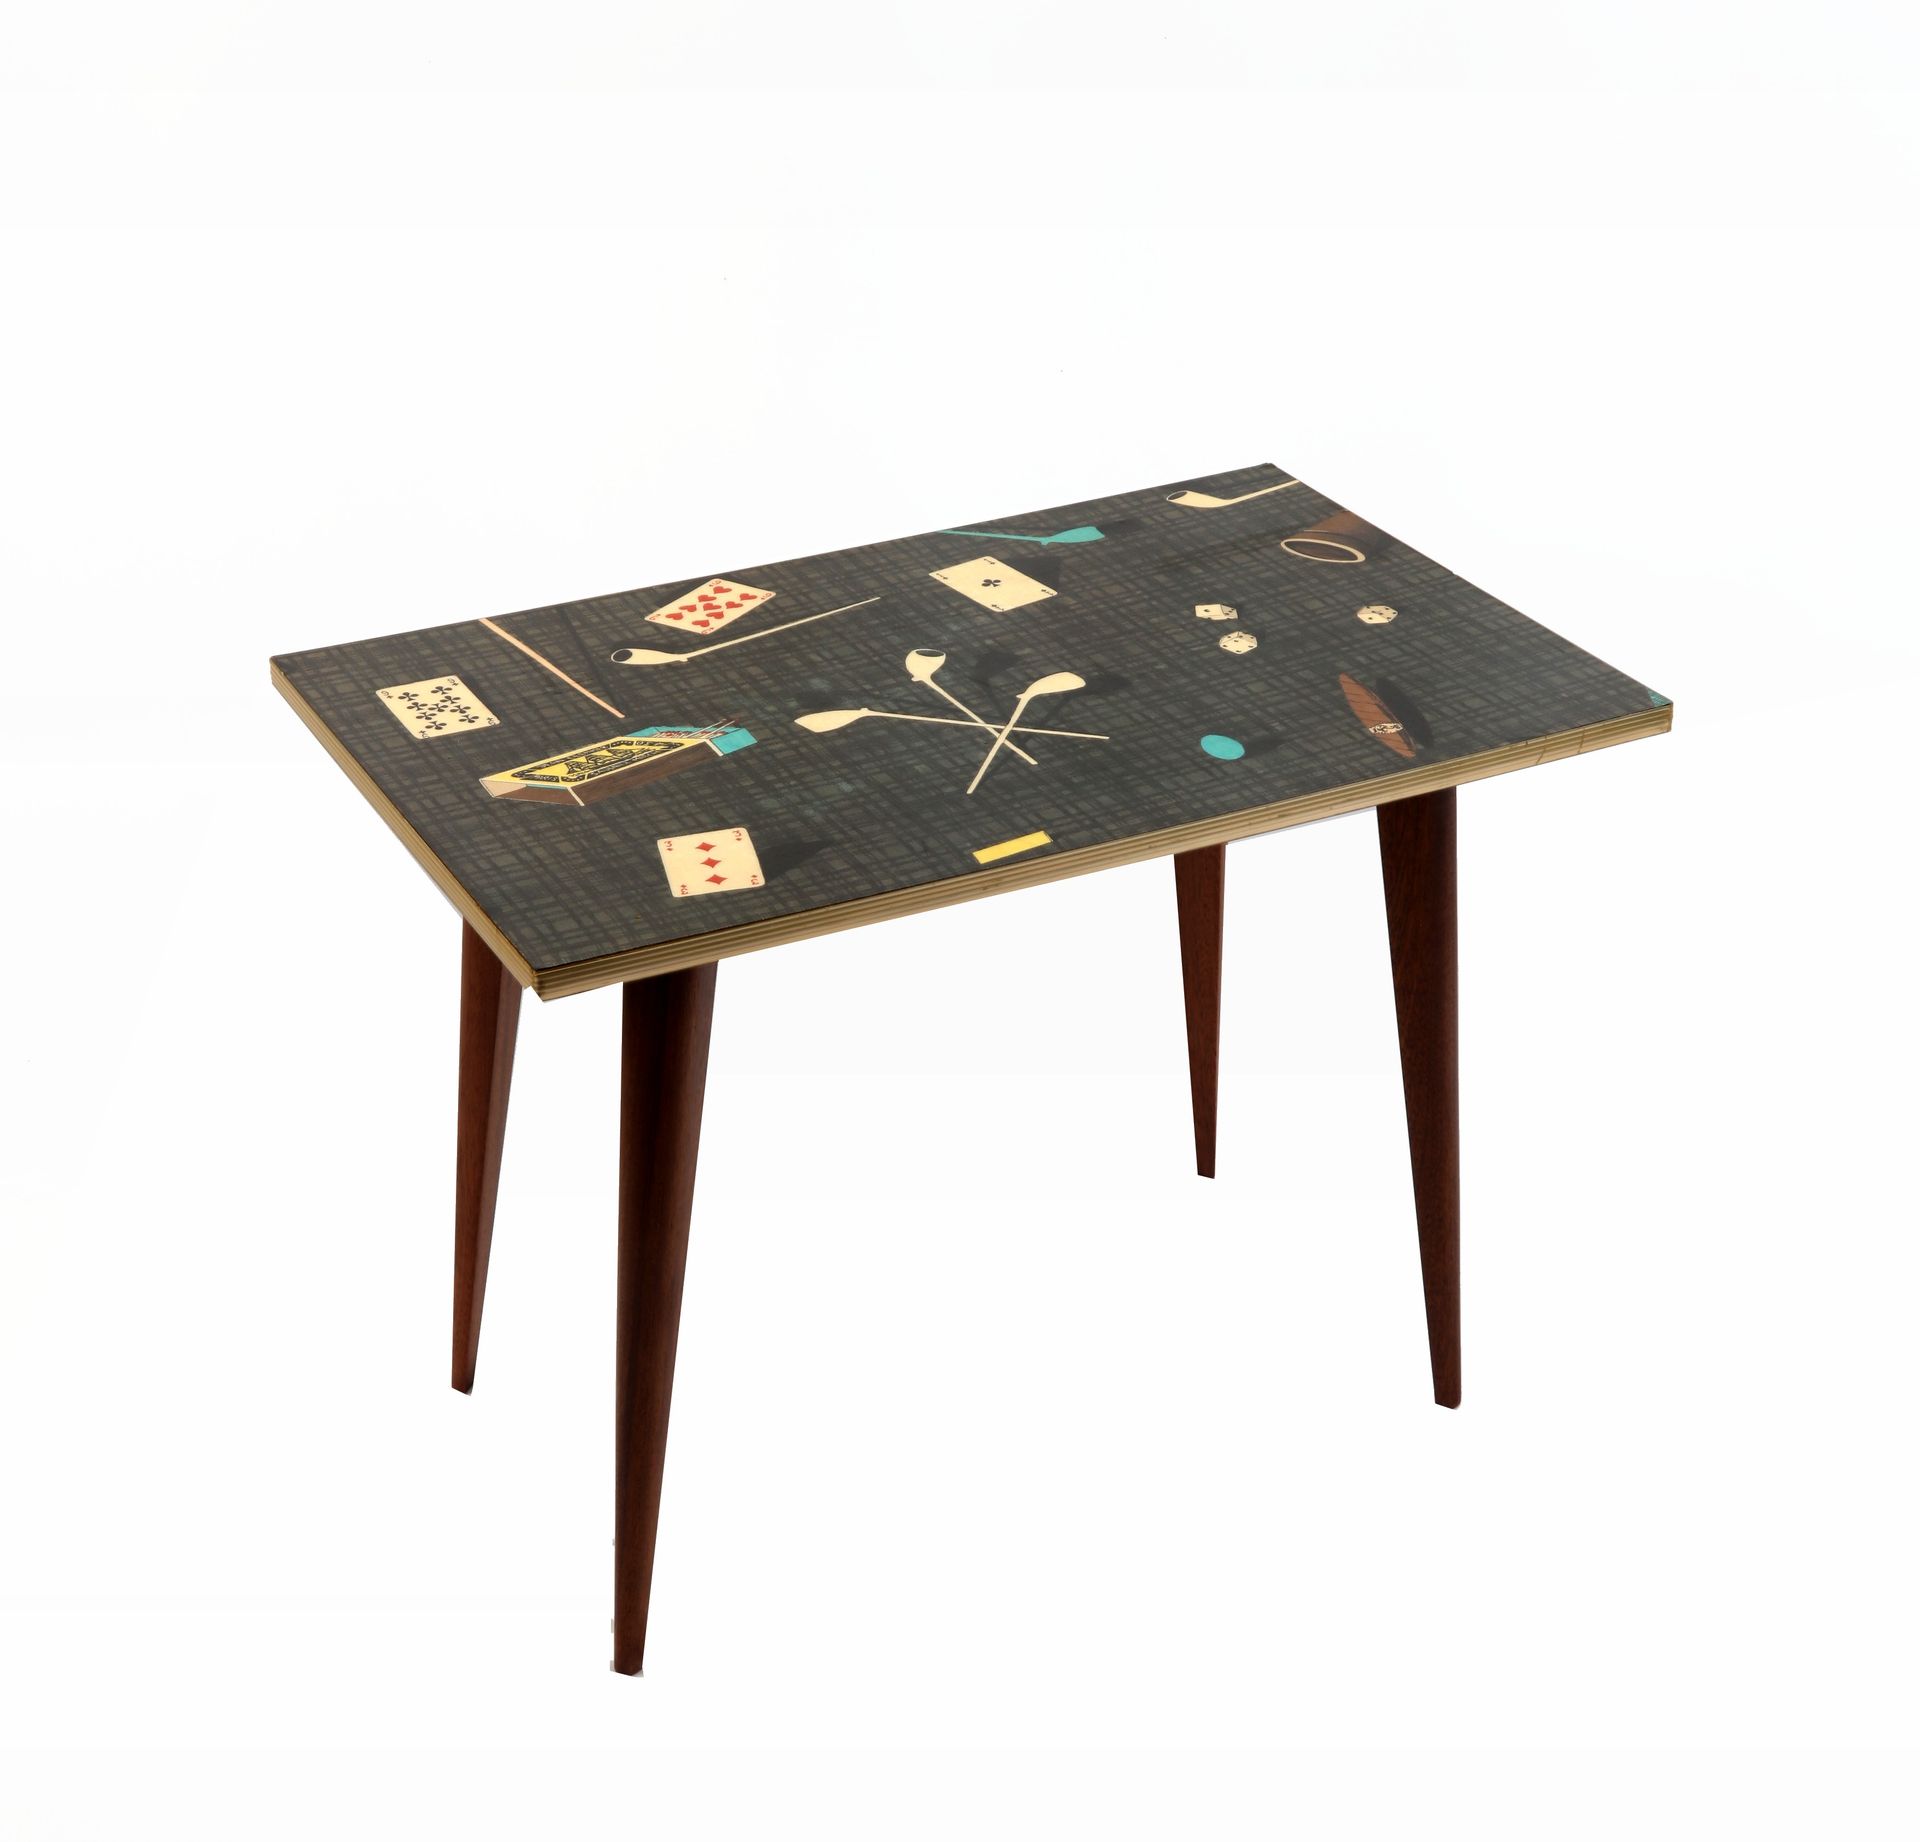 TABLE basse,décor de cartes à jouer, lithographié, vers 1950, 78X50X51